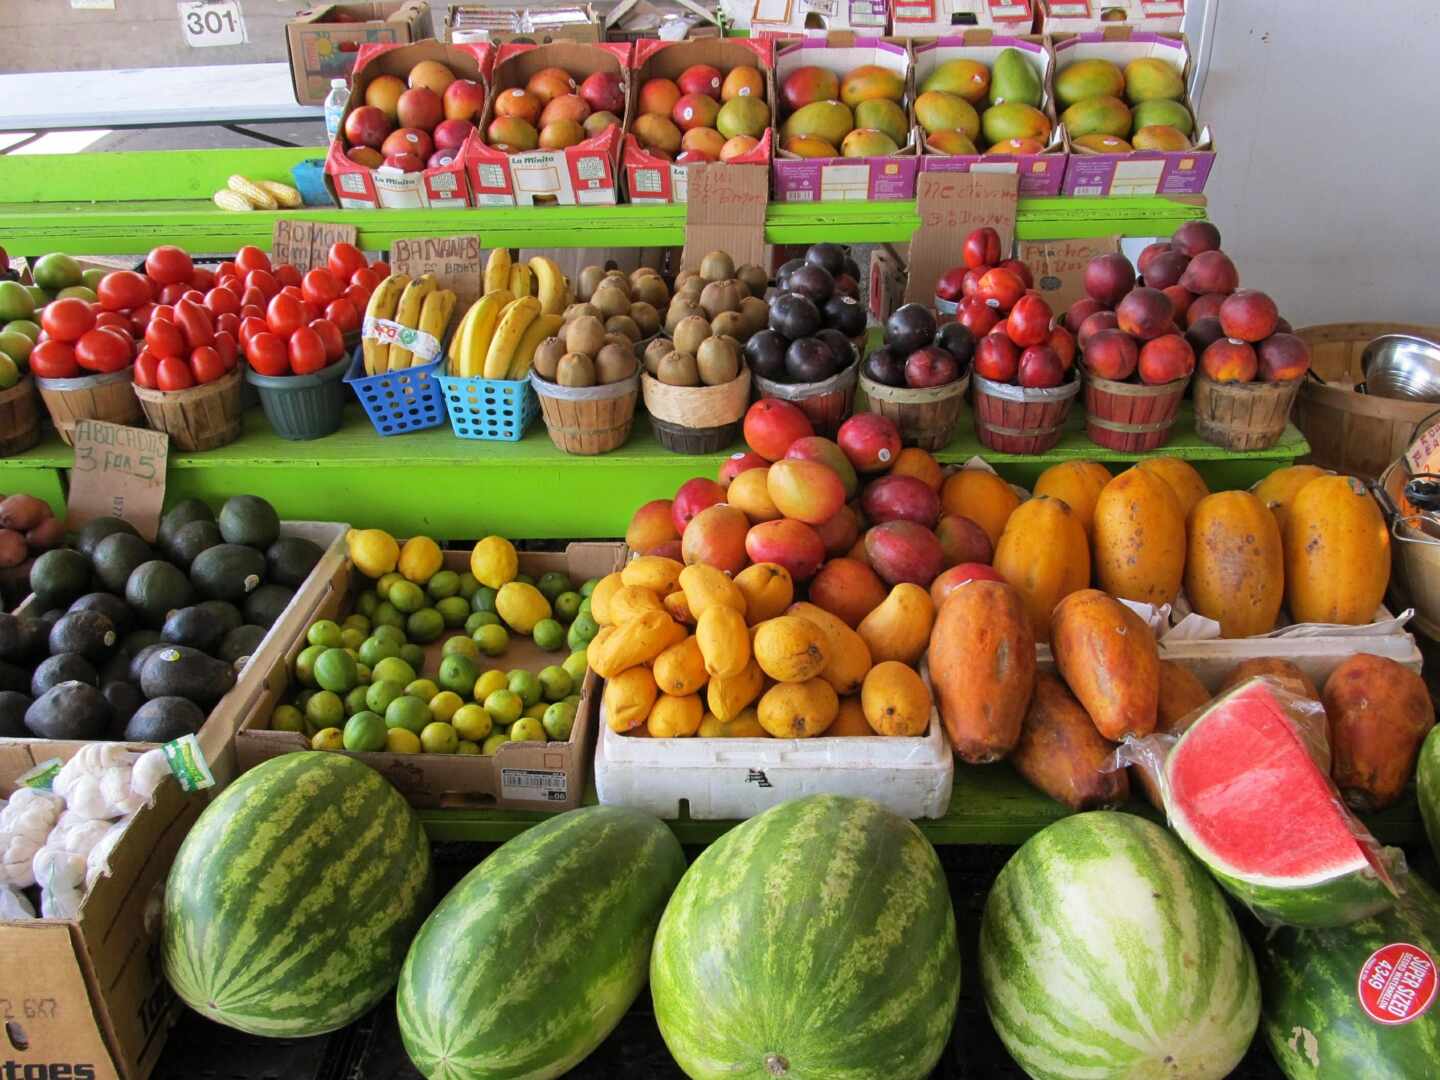 Los agricultores denuncian "especulación" con la fruta: los precios se disparan un 12%